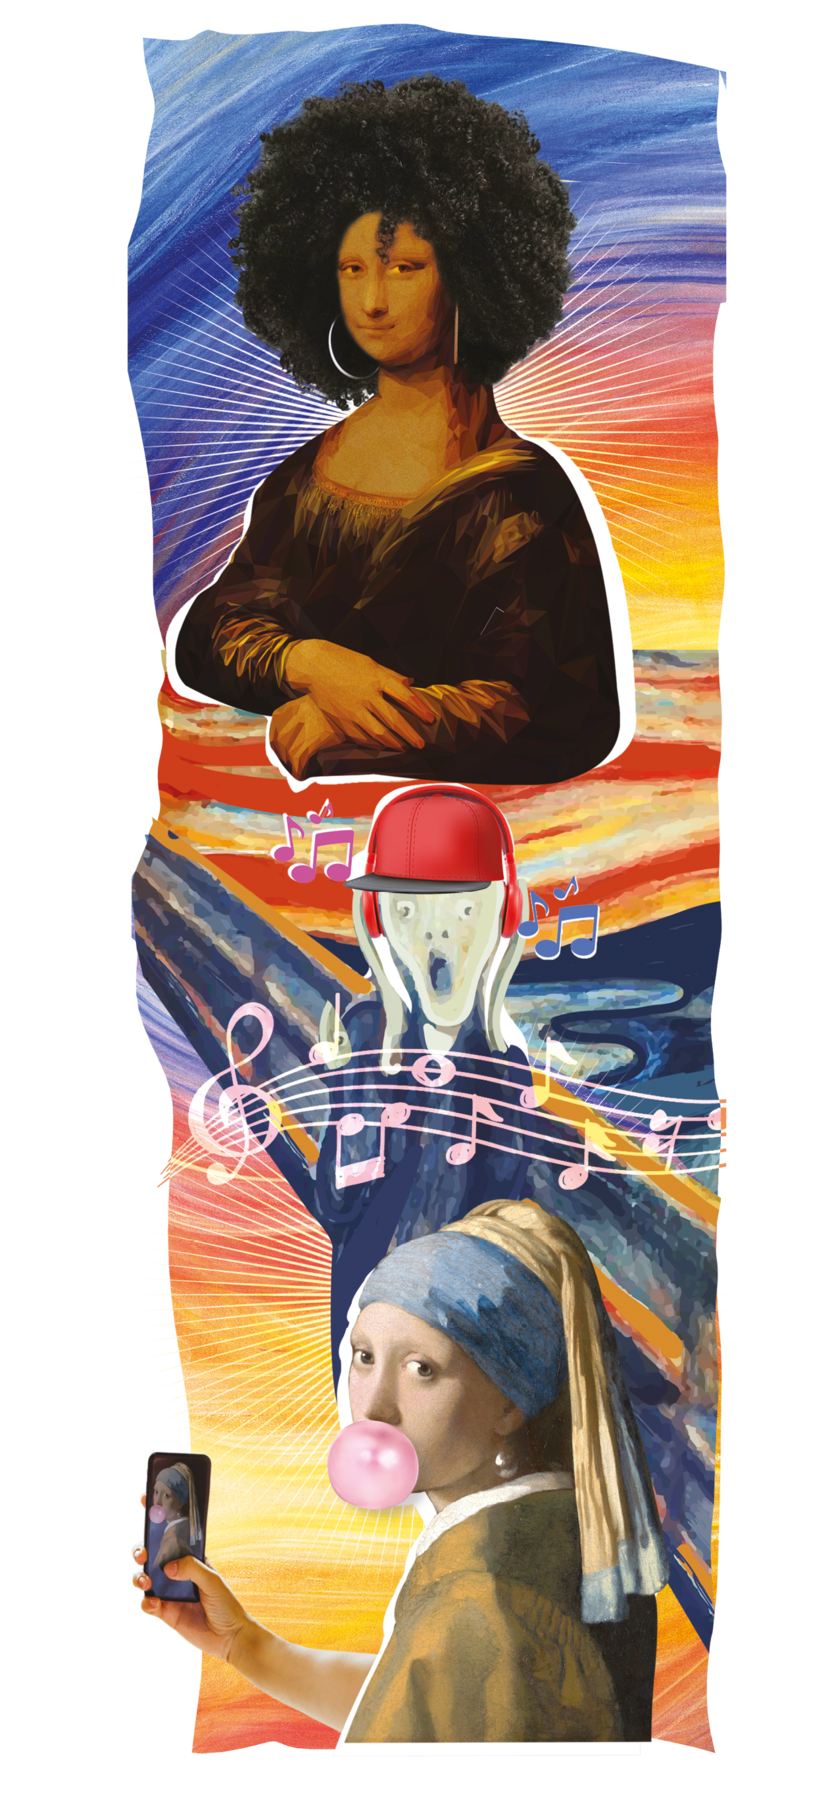 Ilustração. Montagem feita a partir de três pinturas da história da arte. No alto, o rosto e o tronco da Monalisa, de Leonardo da Vinci, com cabelos pretos, compridos e crespos, pele negra e usando brincos de argola. Ao fundo, pintura colorida com tons de azul e variações de amarelo e vermelho na parte debaixo. Abaixo da Monalisa, há o personagem da pintura O grito, de Edward Munch. Ele tem a boca aberta e os olhos arregalados, tendo uma expressão de espanto, e usa fones de ouvido e boné vermelhos. Está com as mãos na lateral do rosto. Ao redor dele, notas musicais em cor rosa, azul e lilás. Abaixo dele, a Moça com brinco de pérola, do pintor Vermeer, usando um lenço azul ao redor da cabeça e brinco de pérola. Ela está fazendo uma bola com goma de mascar e tirando uma foto de si com um telefone celular. Ela e o personagem de O grito parecem estar em cima de uma ponte.